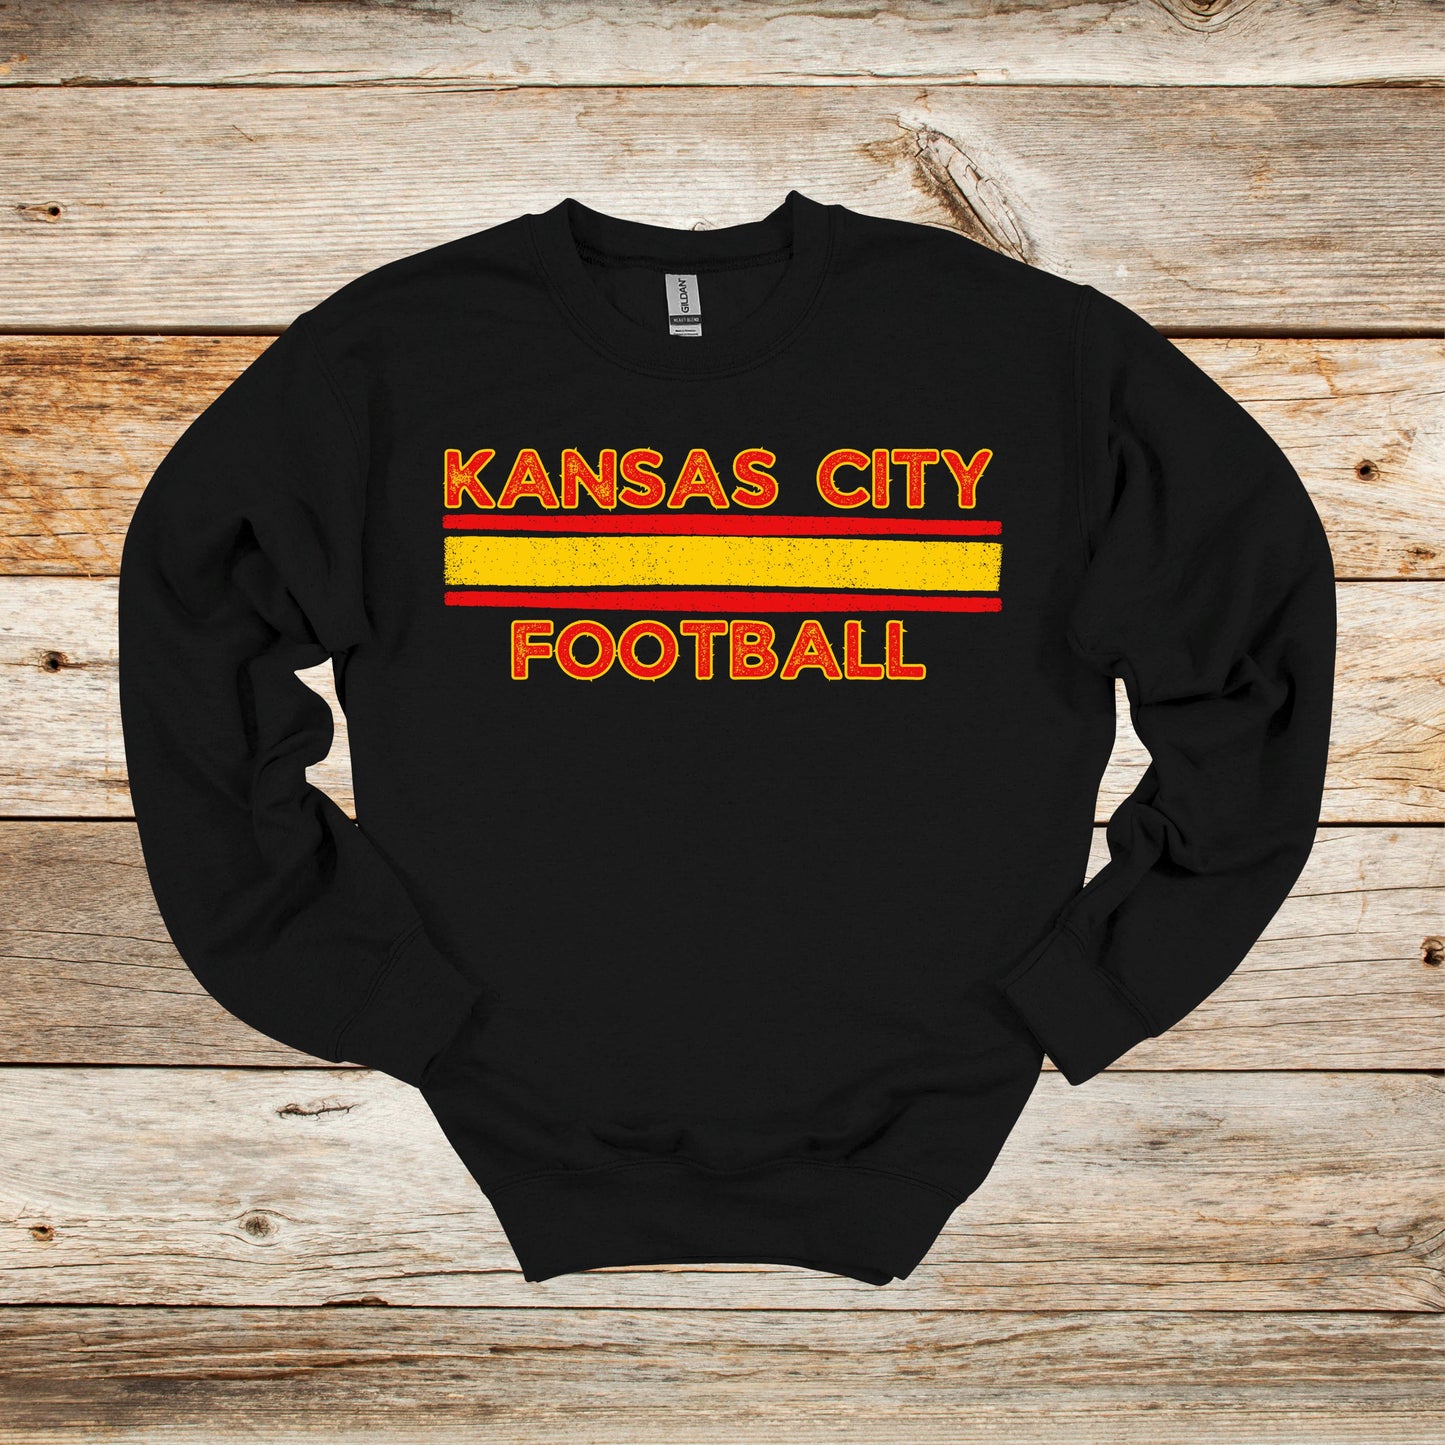 Football Crewneck and Hooded Sweatshirt - Kansas City Chiefs - Kansas City Football - Adult and Children's Tee Shirts - Sports Hooded Sweatshirt Graphic Avenue Crewneck Sweatshirt Black Adult Small